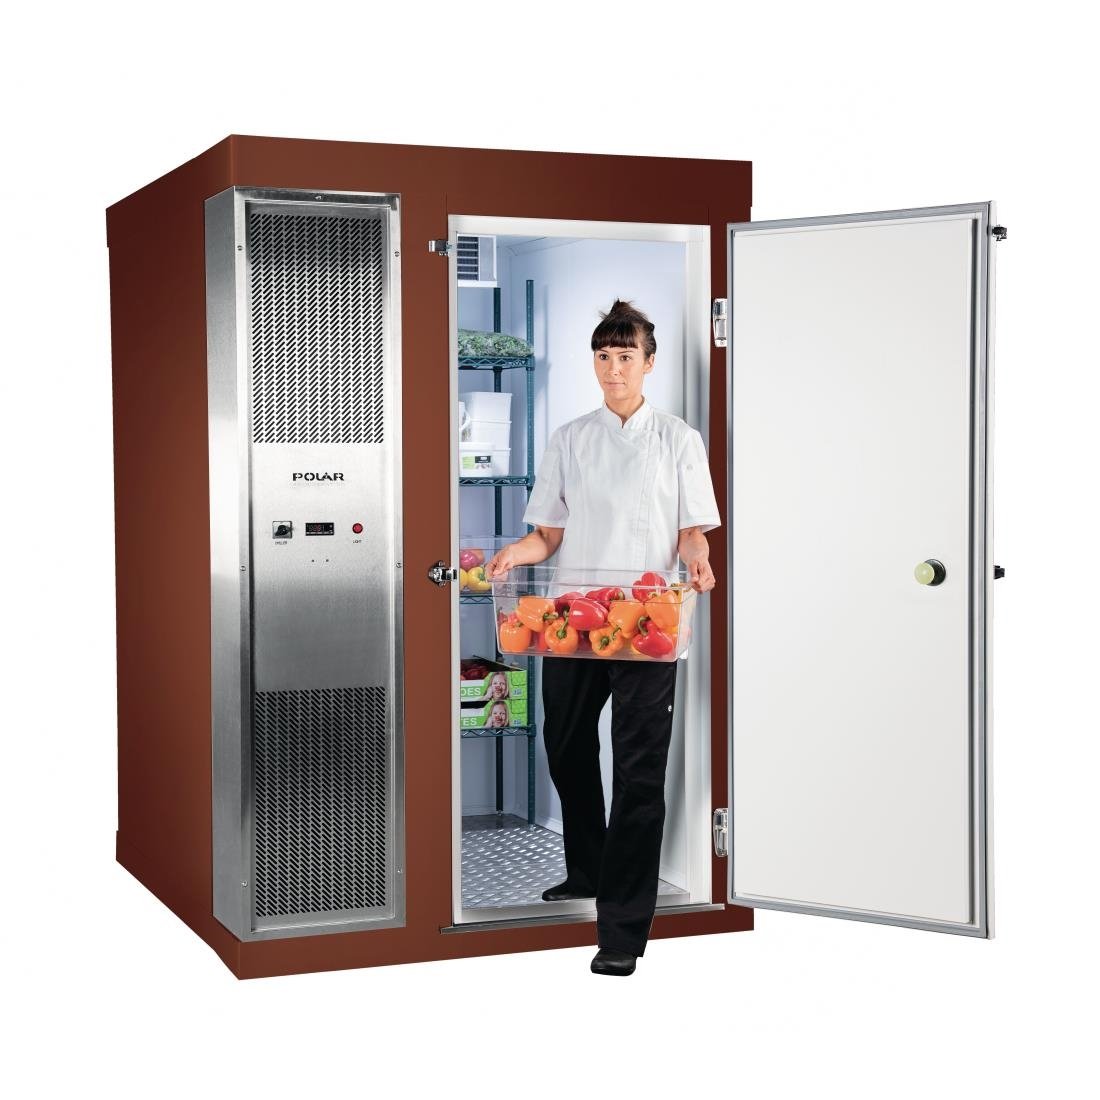 DS486-FBN Polar U-Series 1.8 x 2.1m Integral Walk In Freezer Room Brown JD Catering Equipment Solutions Ltd